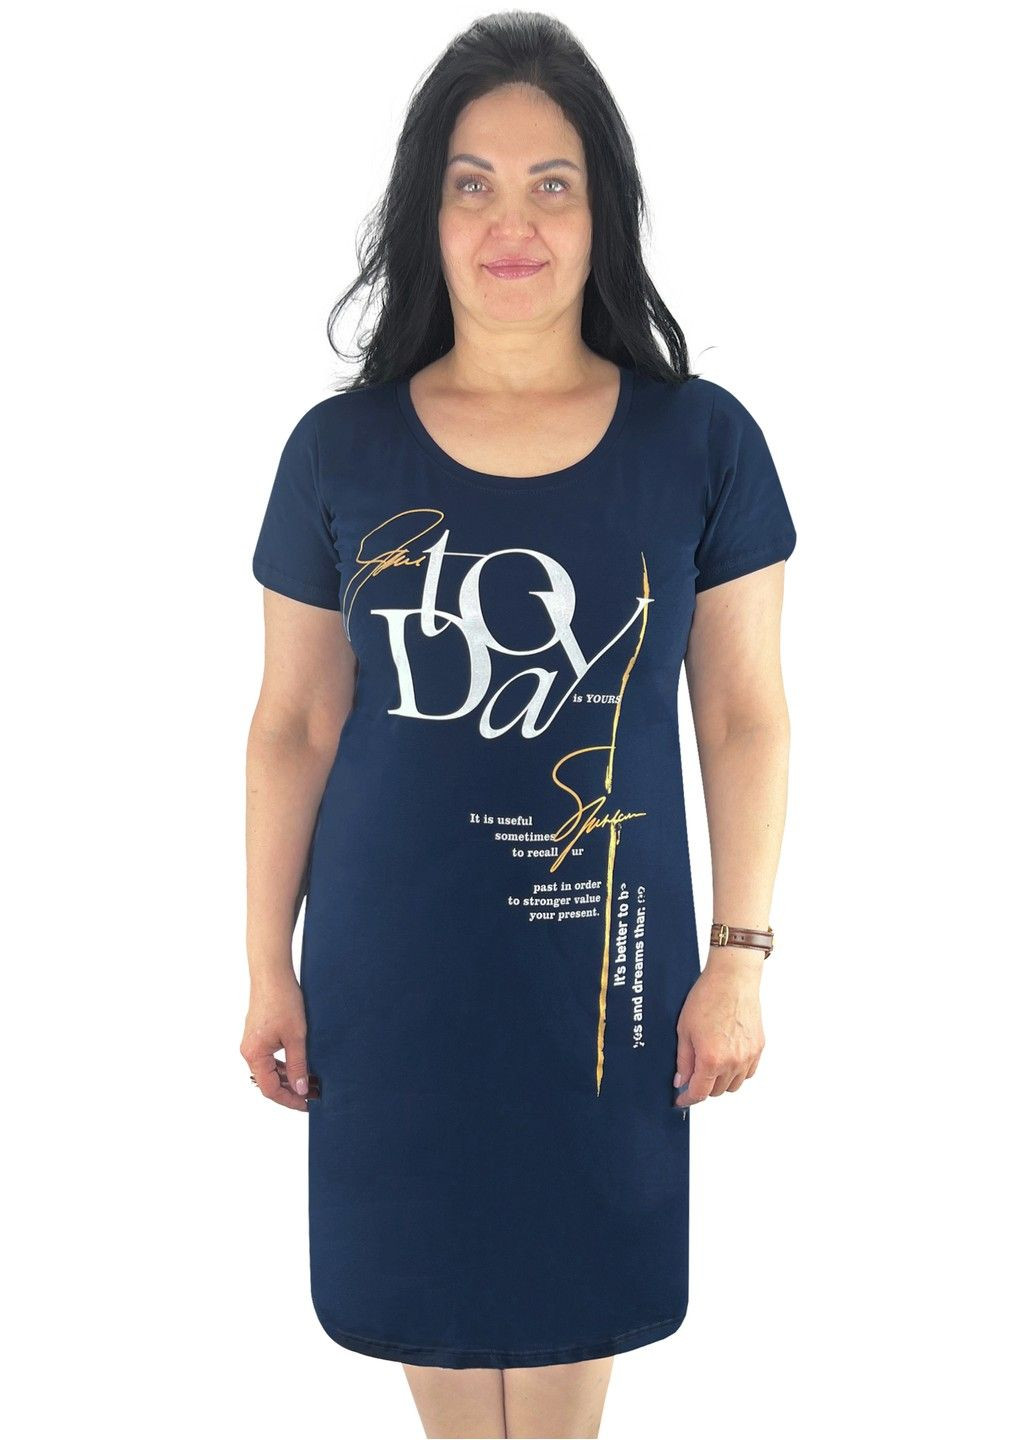 Темно-синее деловое, домашнее, повседневный платье женское с накатом фуликра Жемчужина стилей с надписью